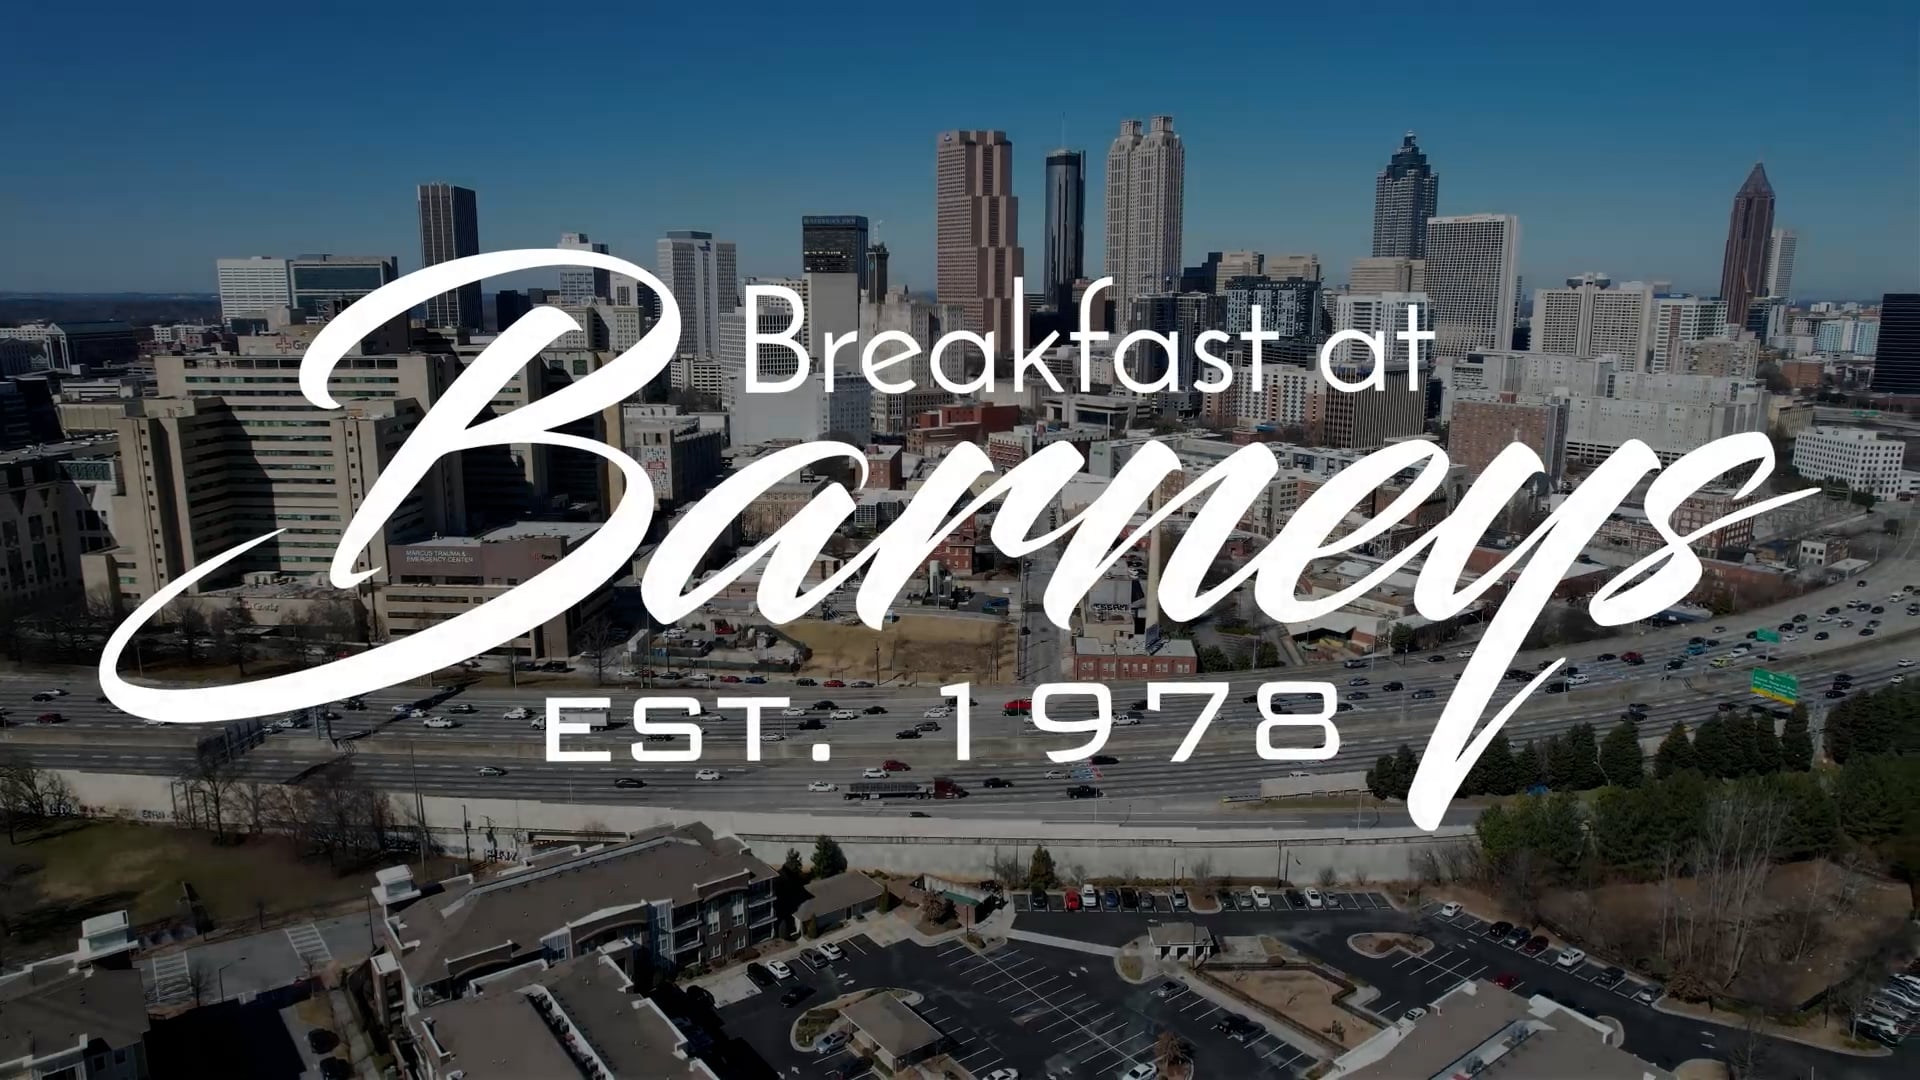 Breakfast at Barneys Vday promo